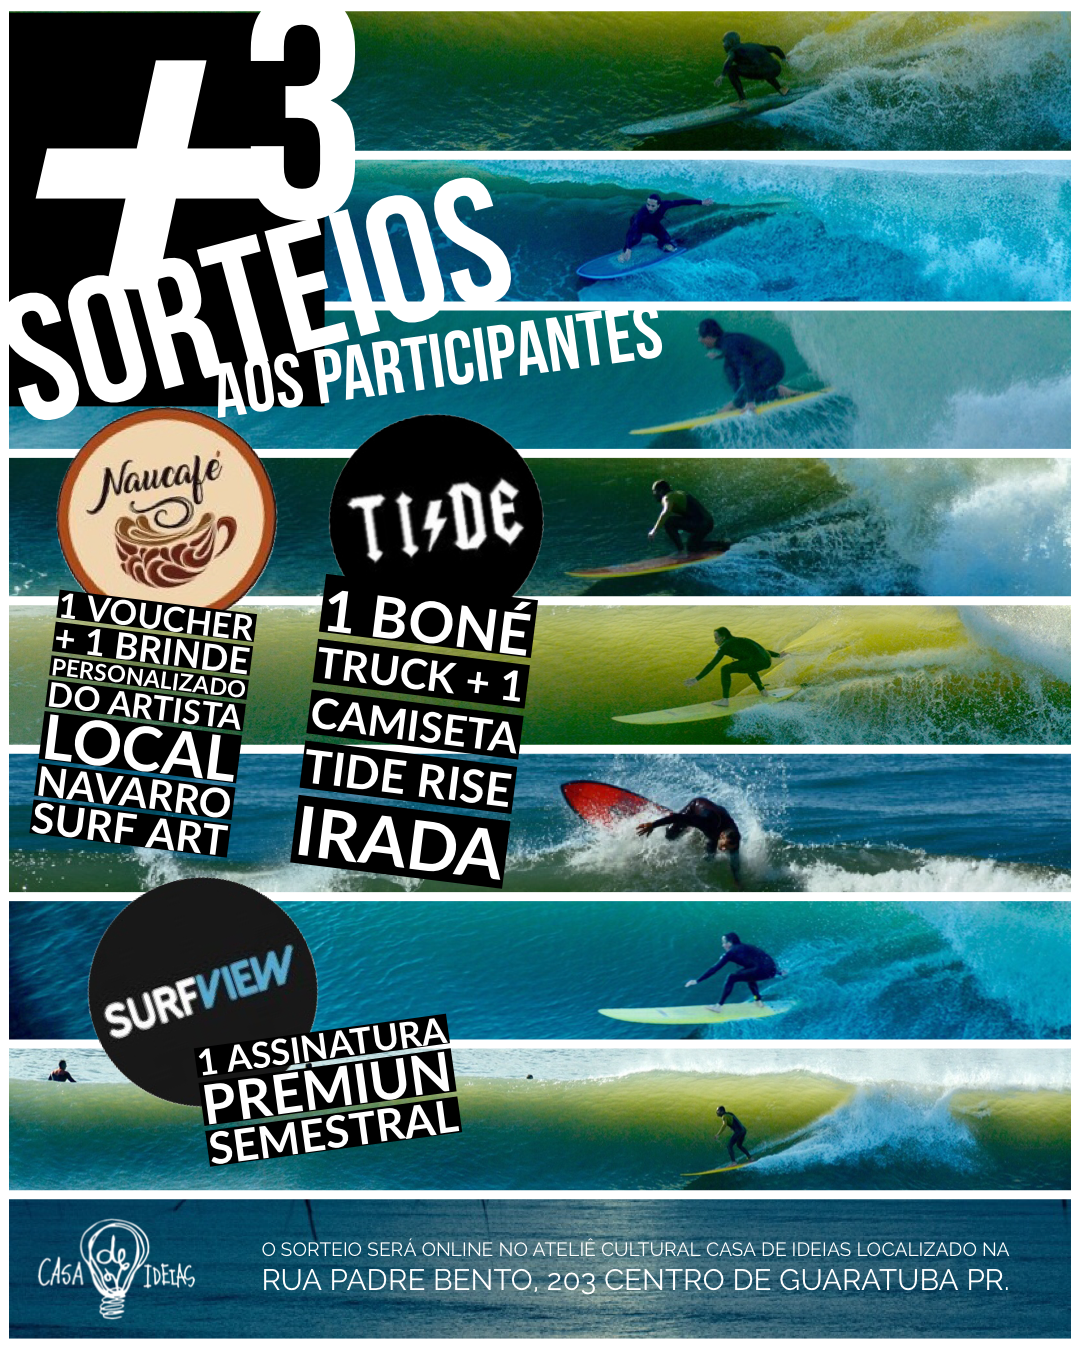 Além do sorteio principal que é 1 sessão de fotografias de surf ou 1 ensaio fotográfico pelas praias de Guaratuba, teremos mais 3 sorteios bônus aos participantes, com o apoio de nossos parceiros TideRise, SurfView Brasil, Cafeteria Naucafé e Navarro Surf Art ...